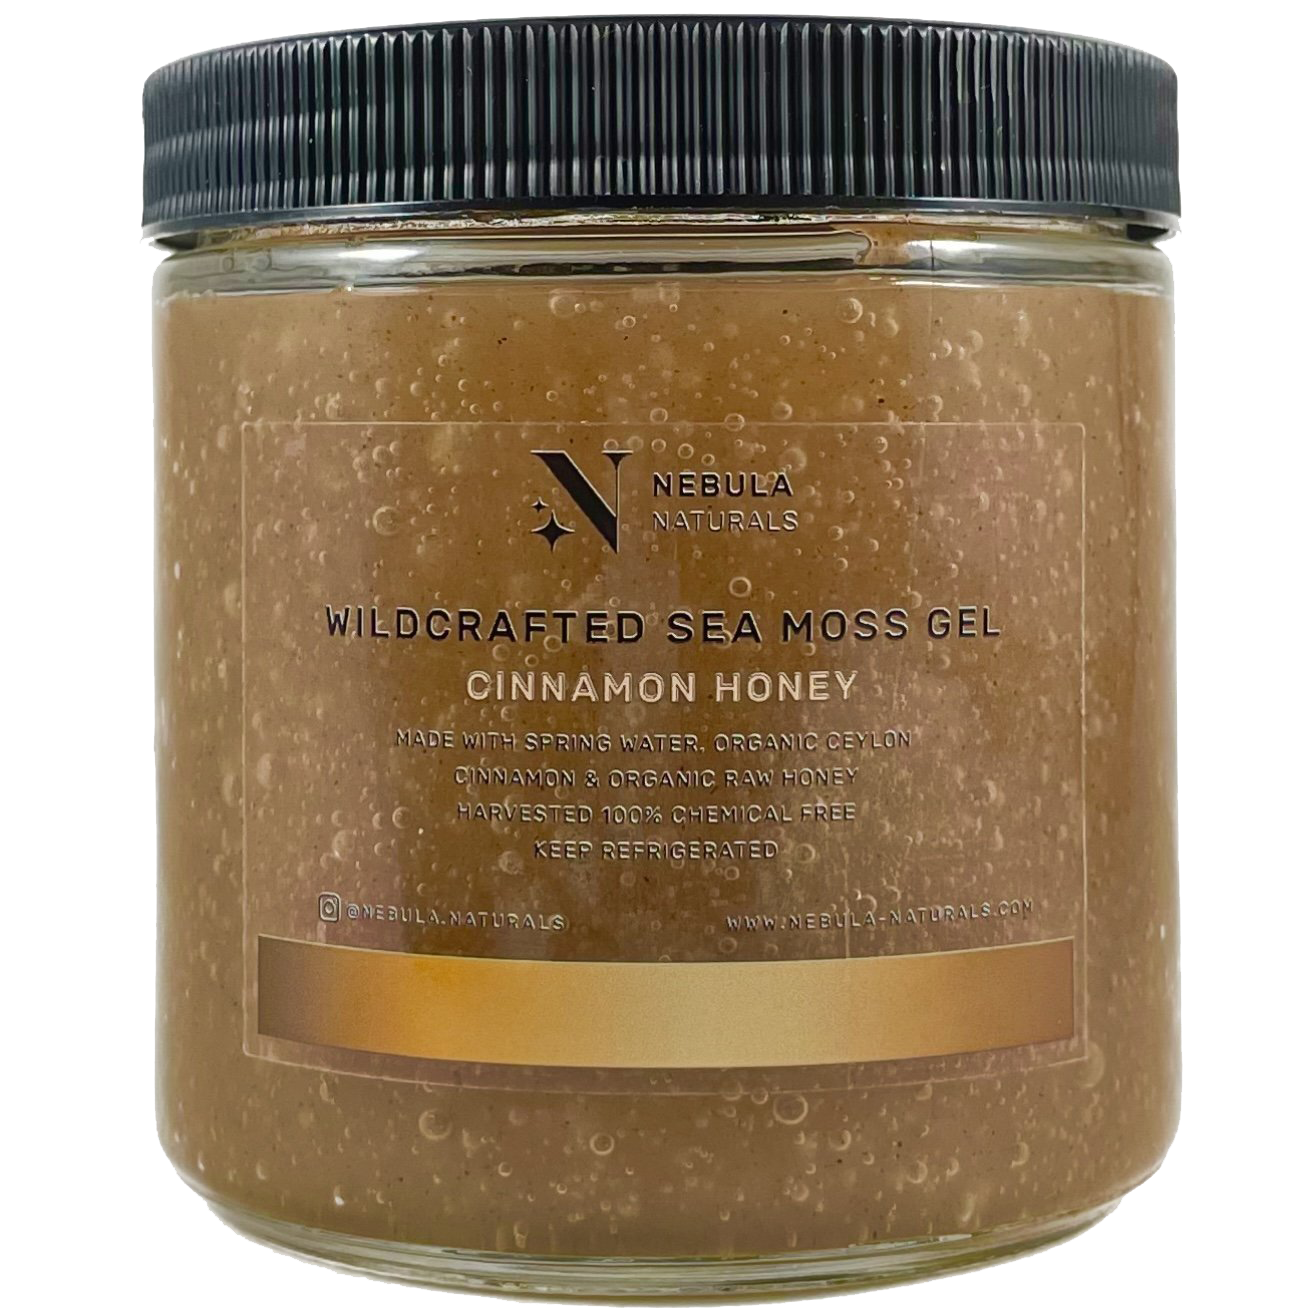 Cinnamon Honey Sea Moss Gel